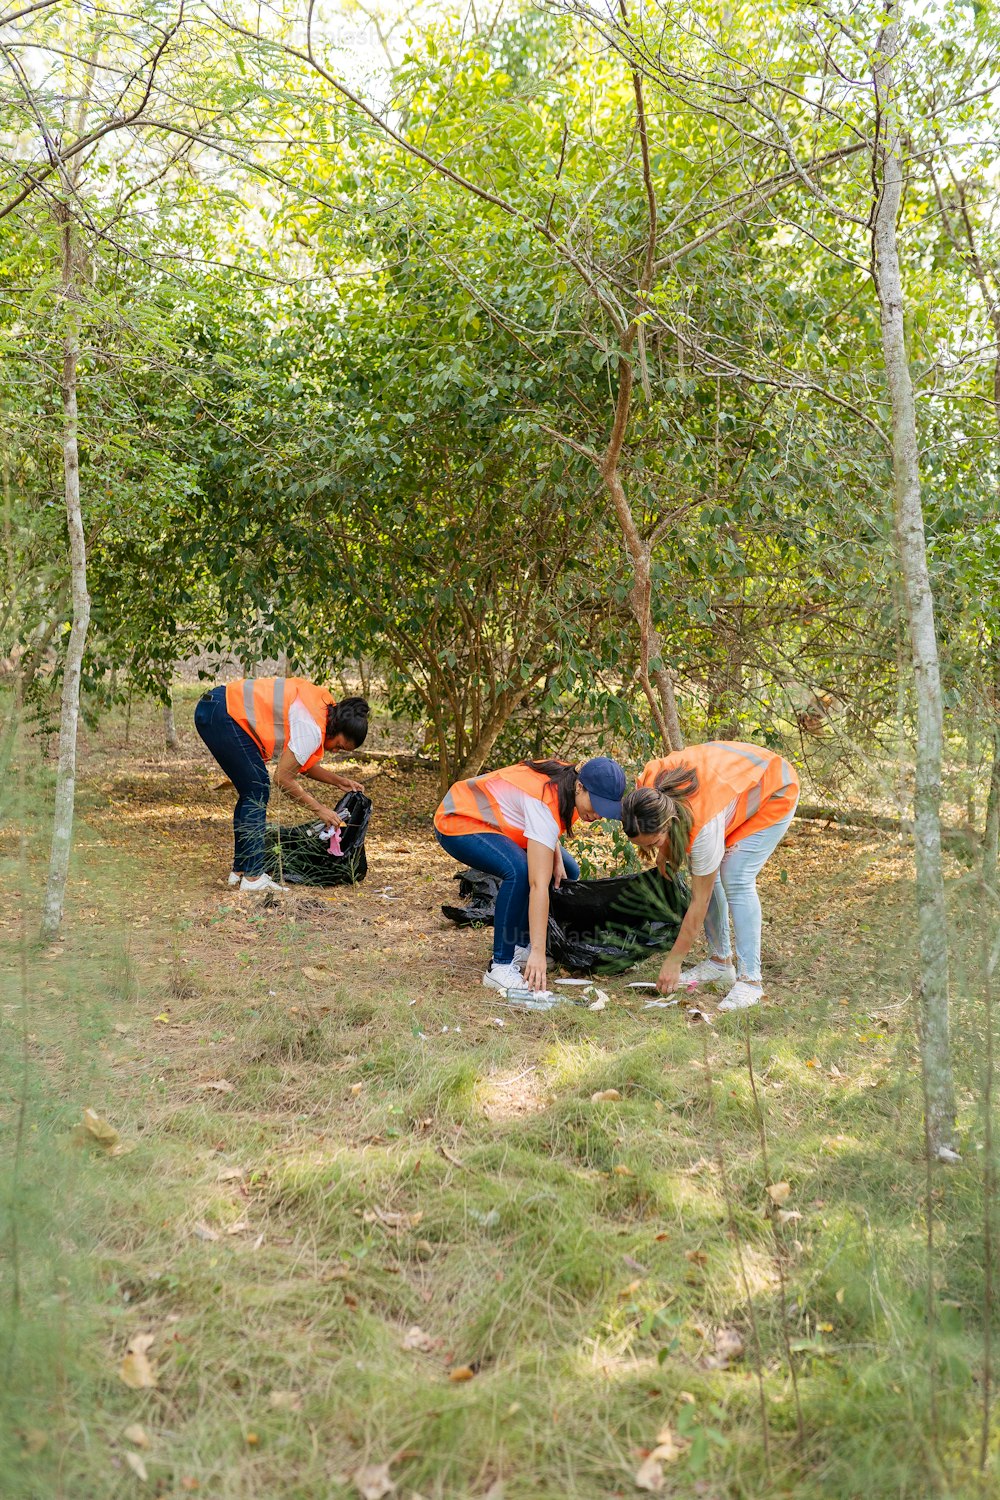 주황색 조끼를 입은 한 무리의 사람들이 나무에서 일하고 있다